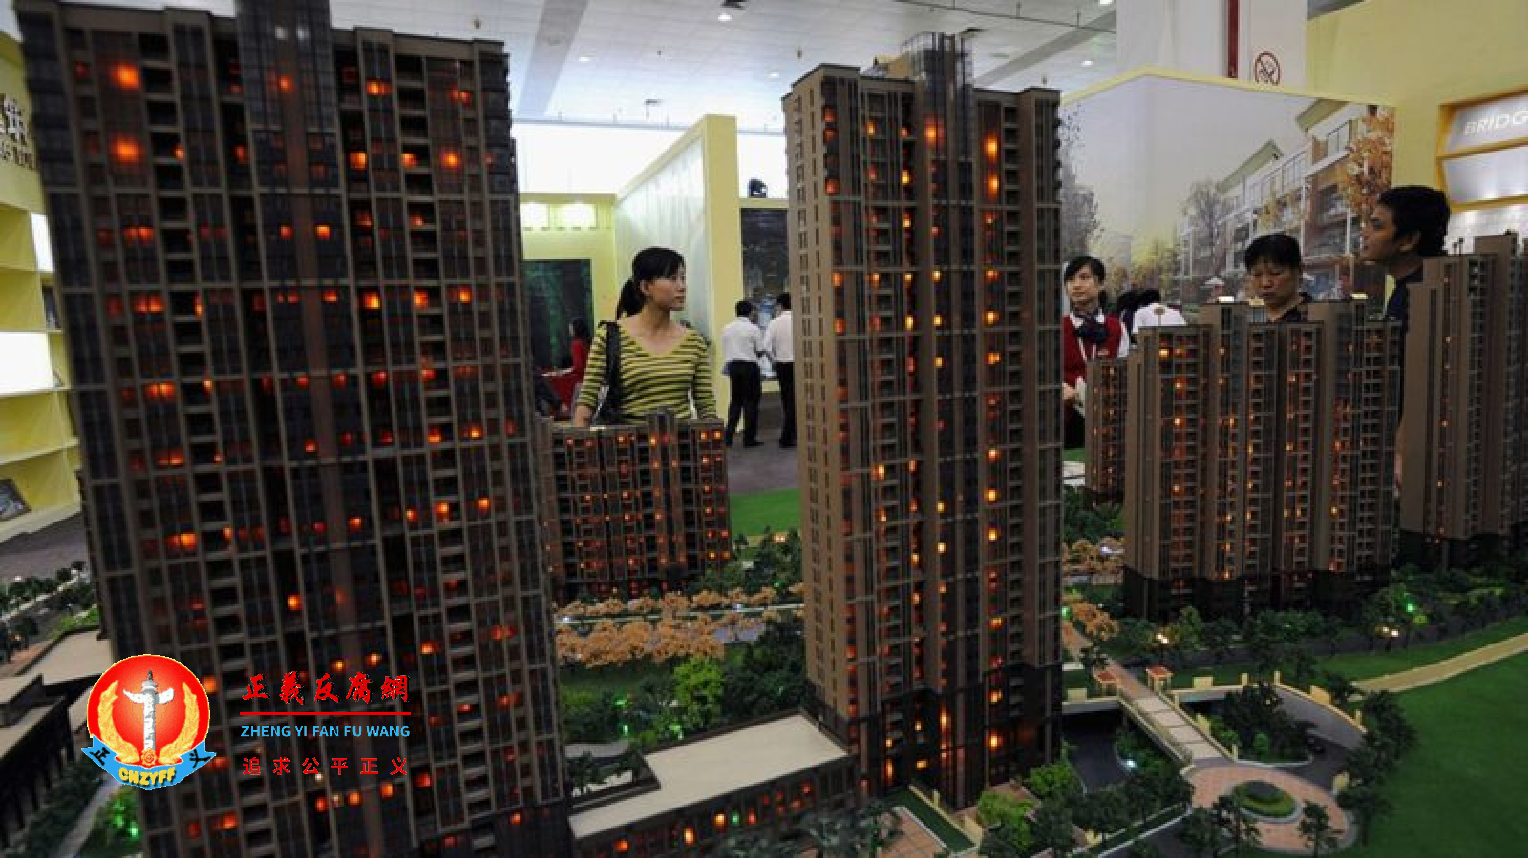 湖北省武汉市一些打算买房的客户正在一次房地产交易上查看公寓模型。.png